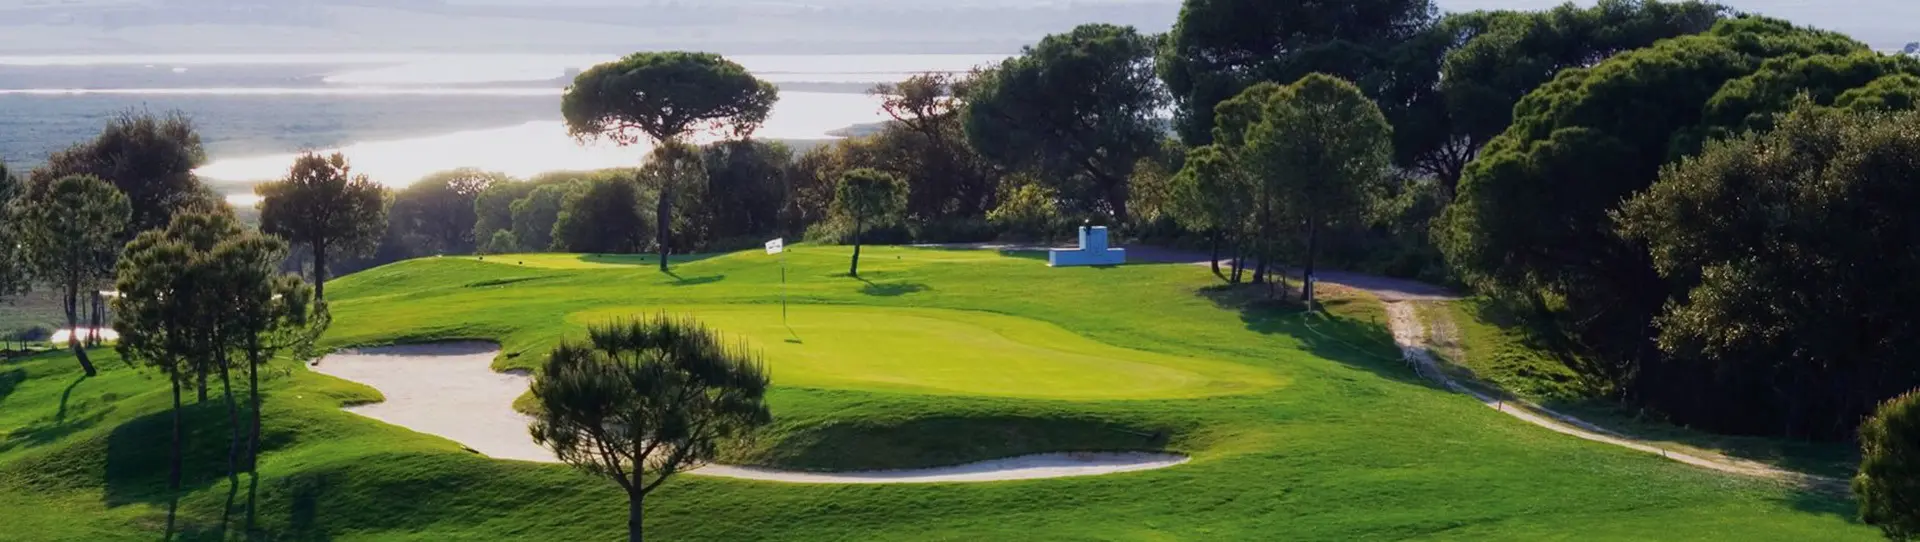 Spain golf courses - El Rompido North - Photo 1